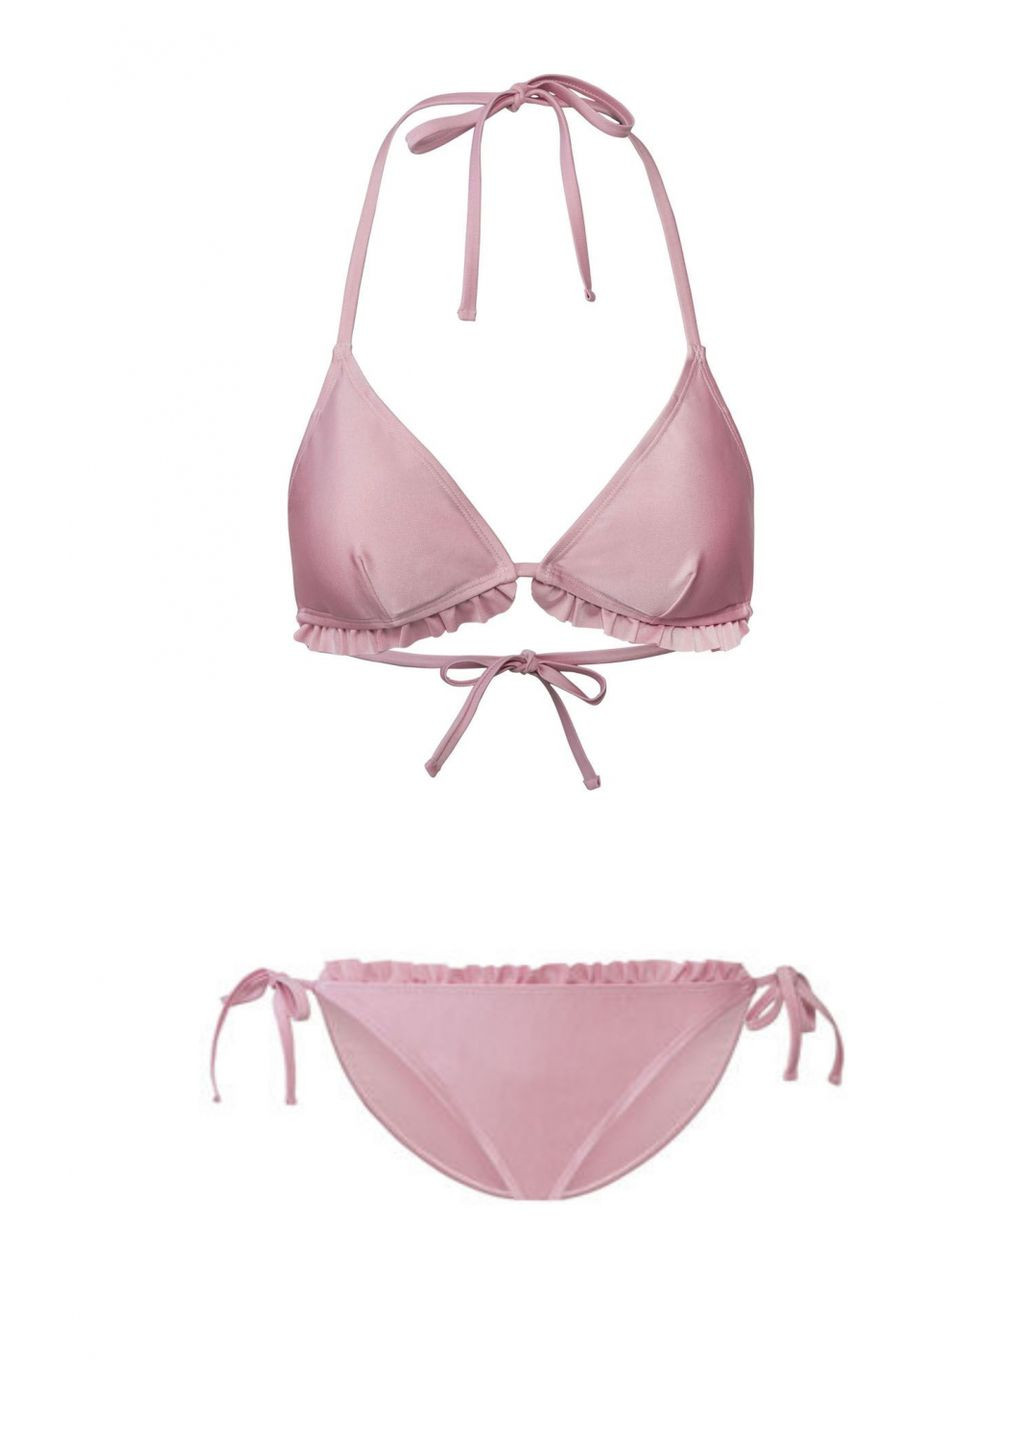 Розовый купальник раздельный на подкладке для женщины lycra® 348526 36(s) бикини Esmara